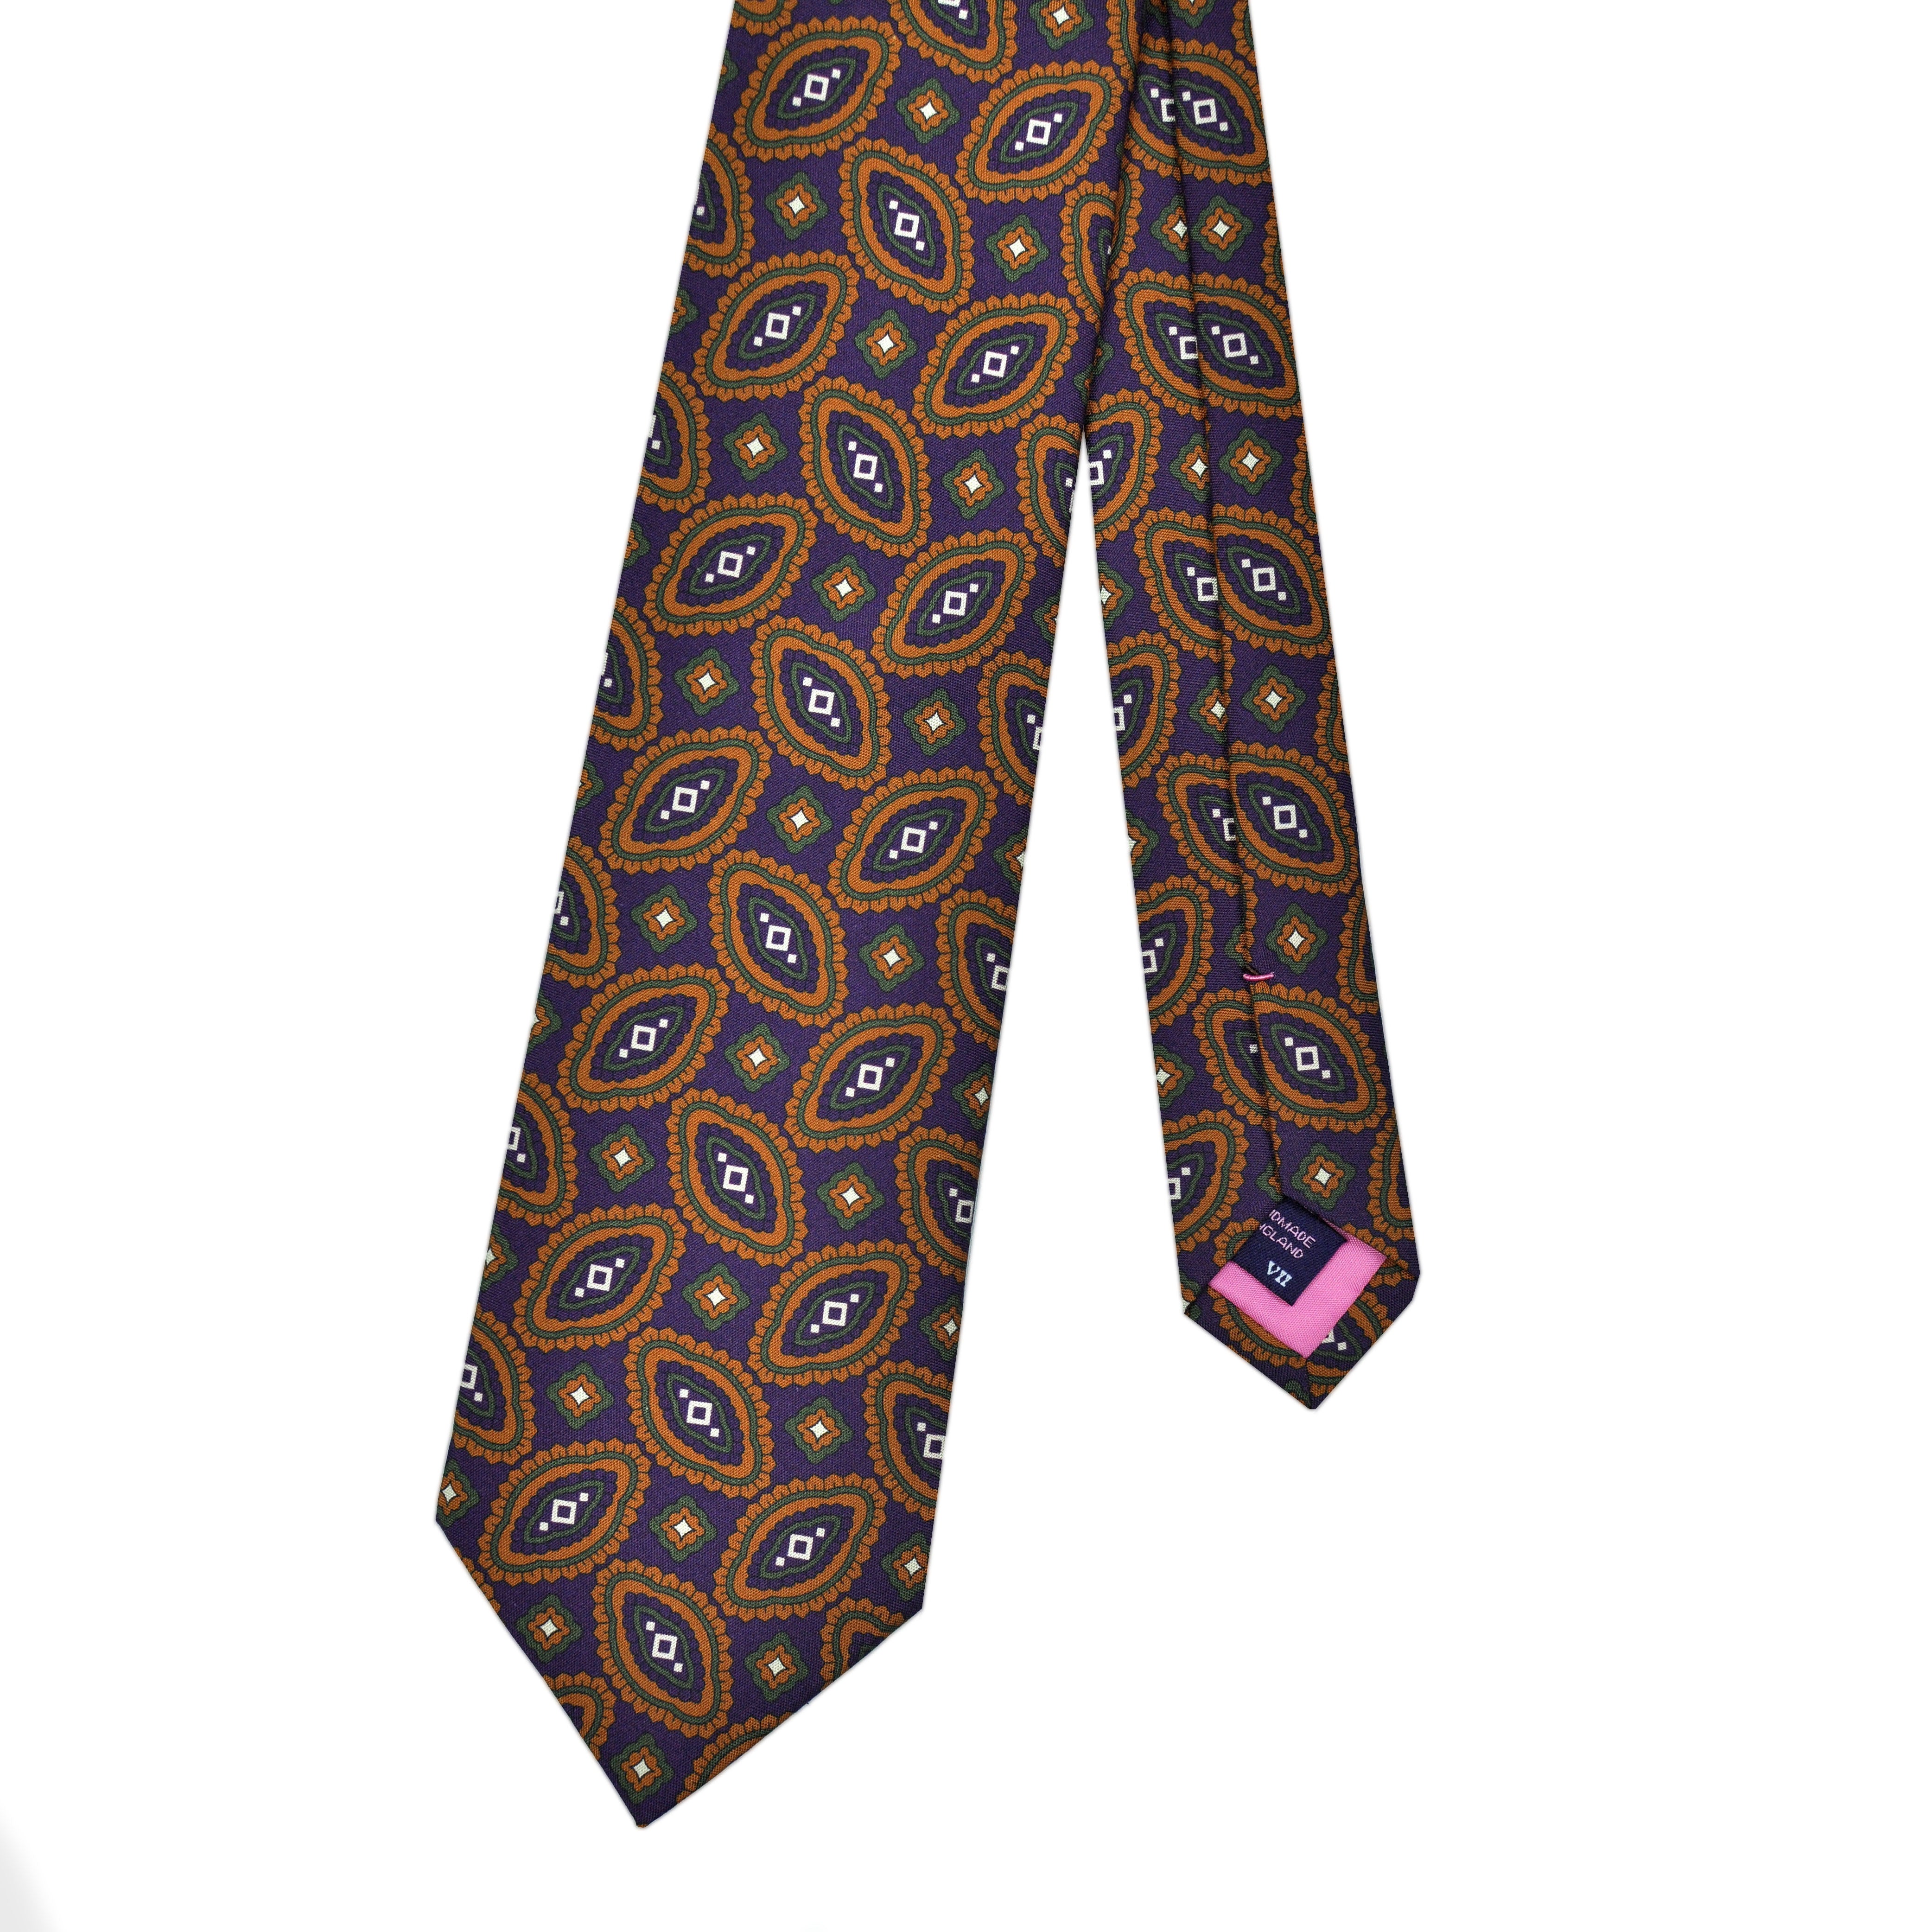 Florets 'Dusty Silk' Print Tie in Purple & Ochre